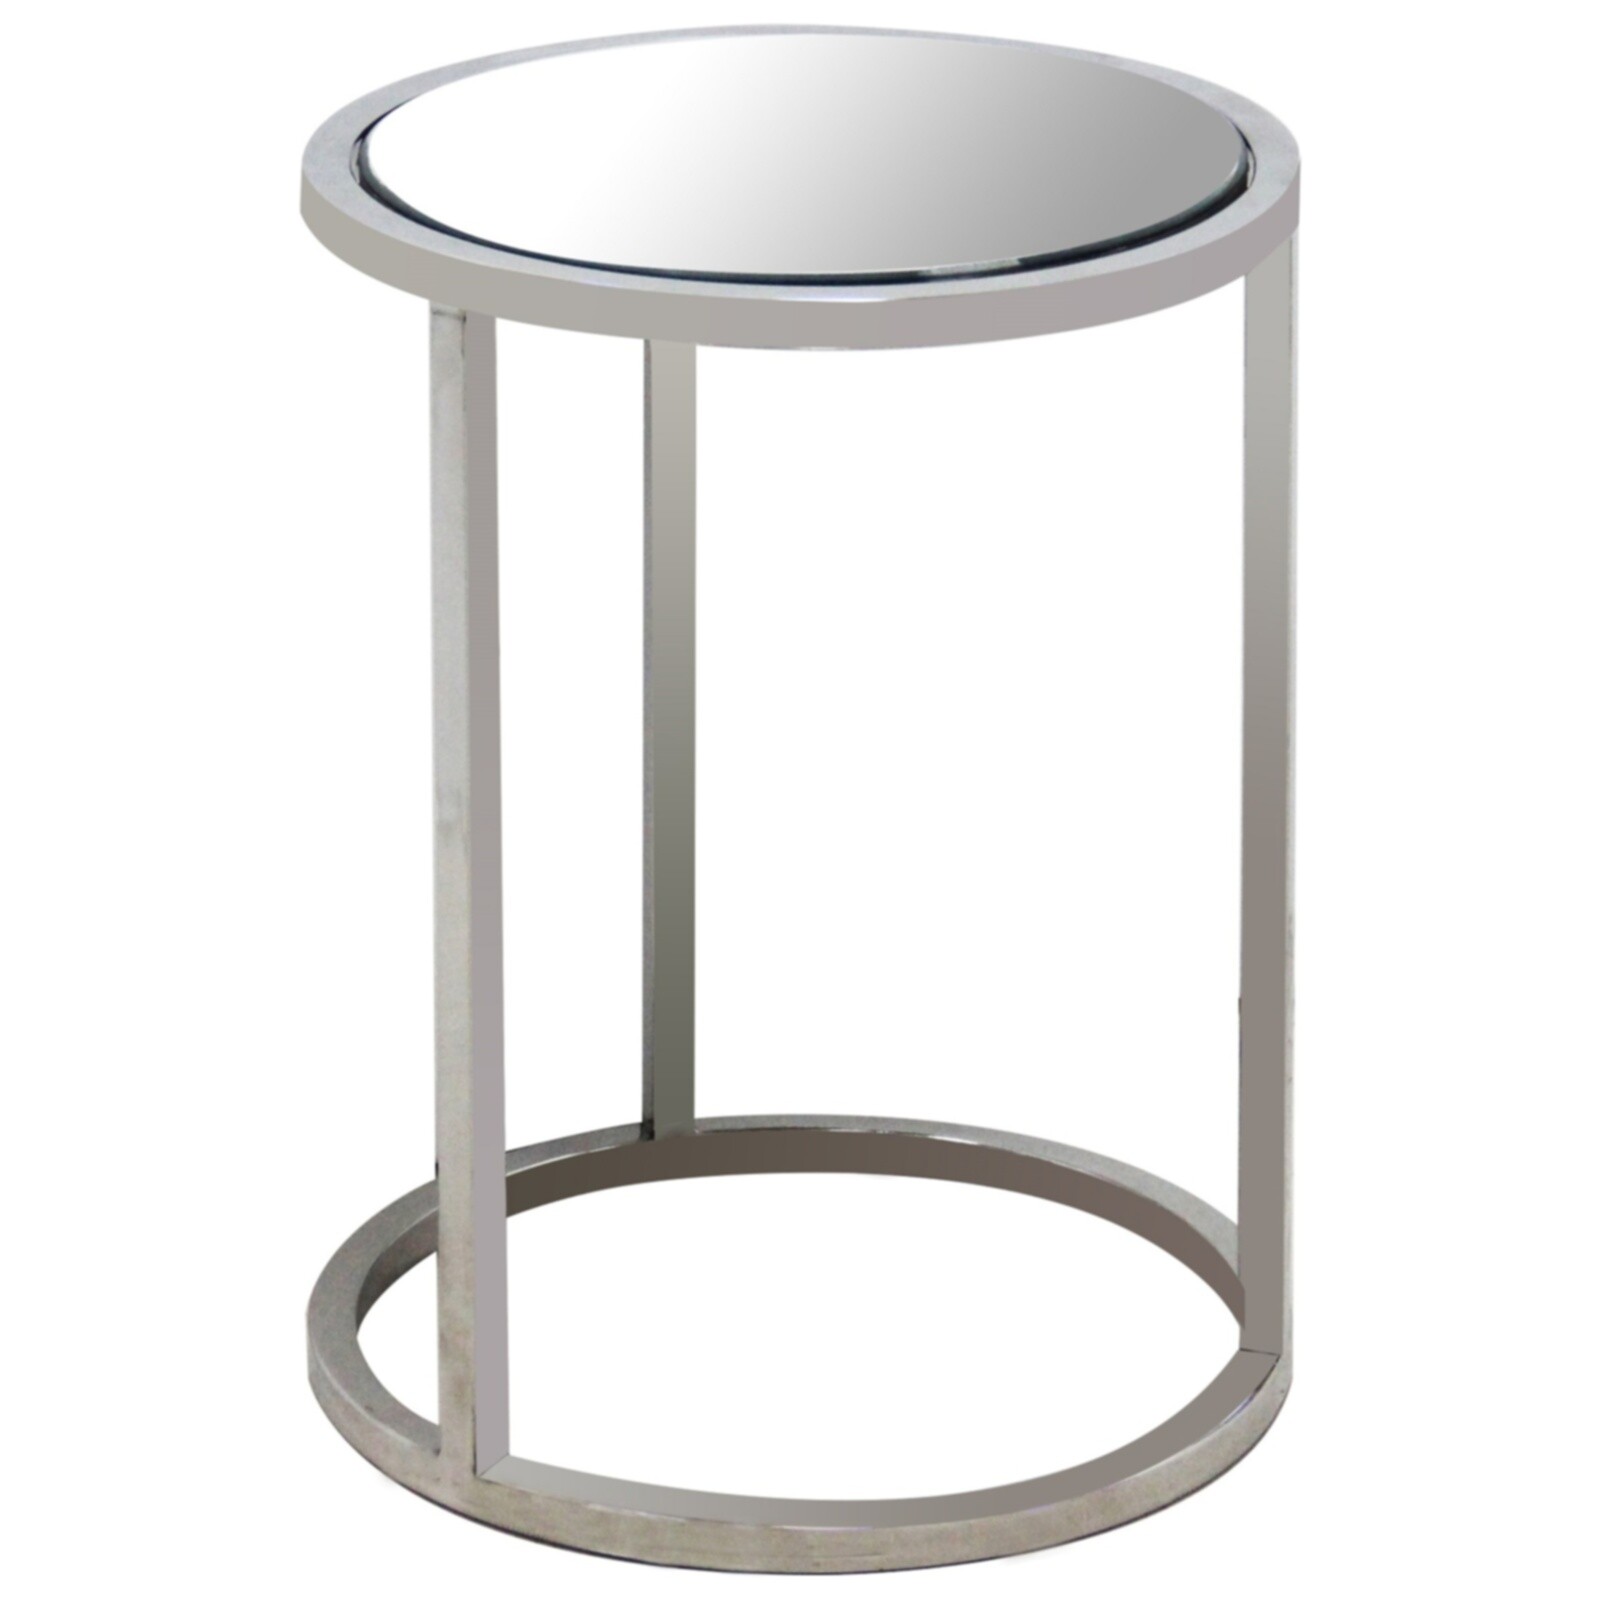 Приставной столик зеркальный круглый с металлическим каркасом Intorno